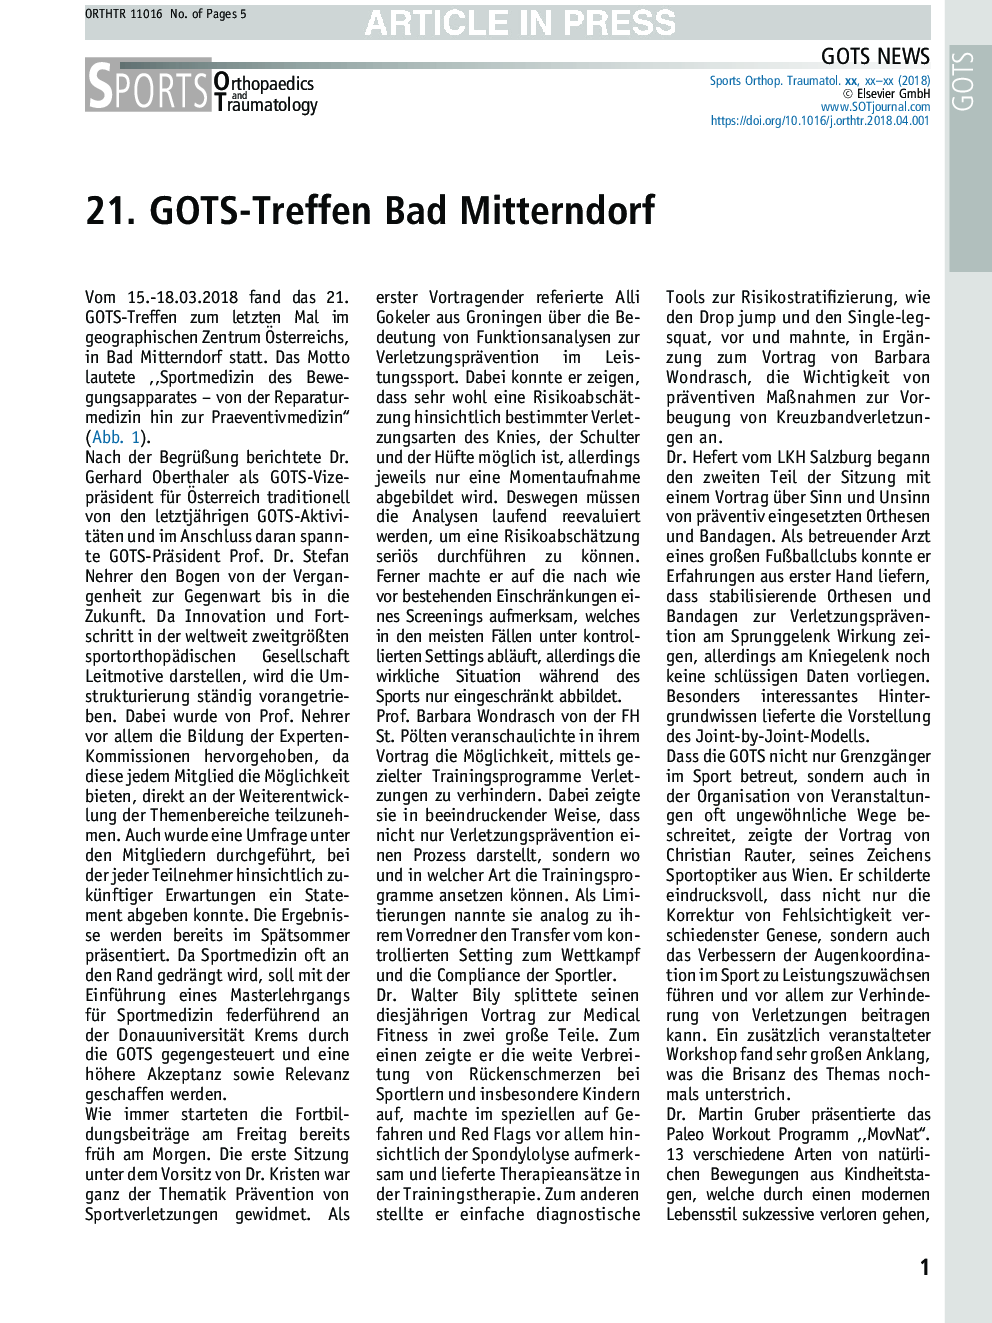 21. GOTS-Treffen Bad Mitterndorf